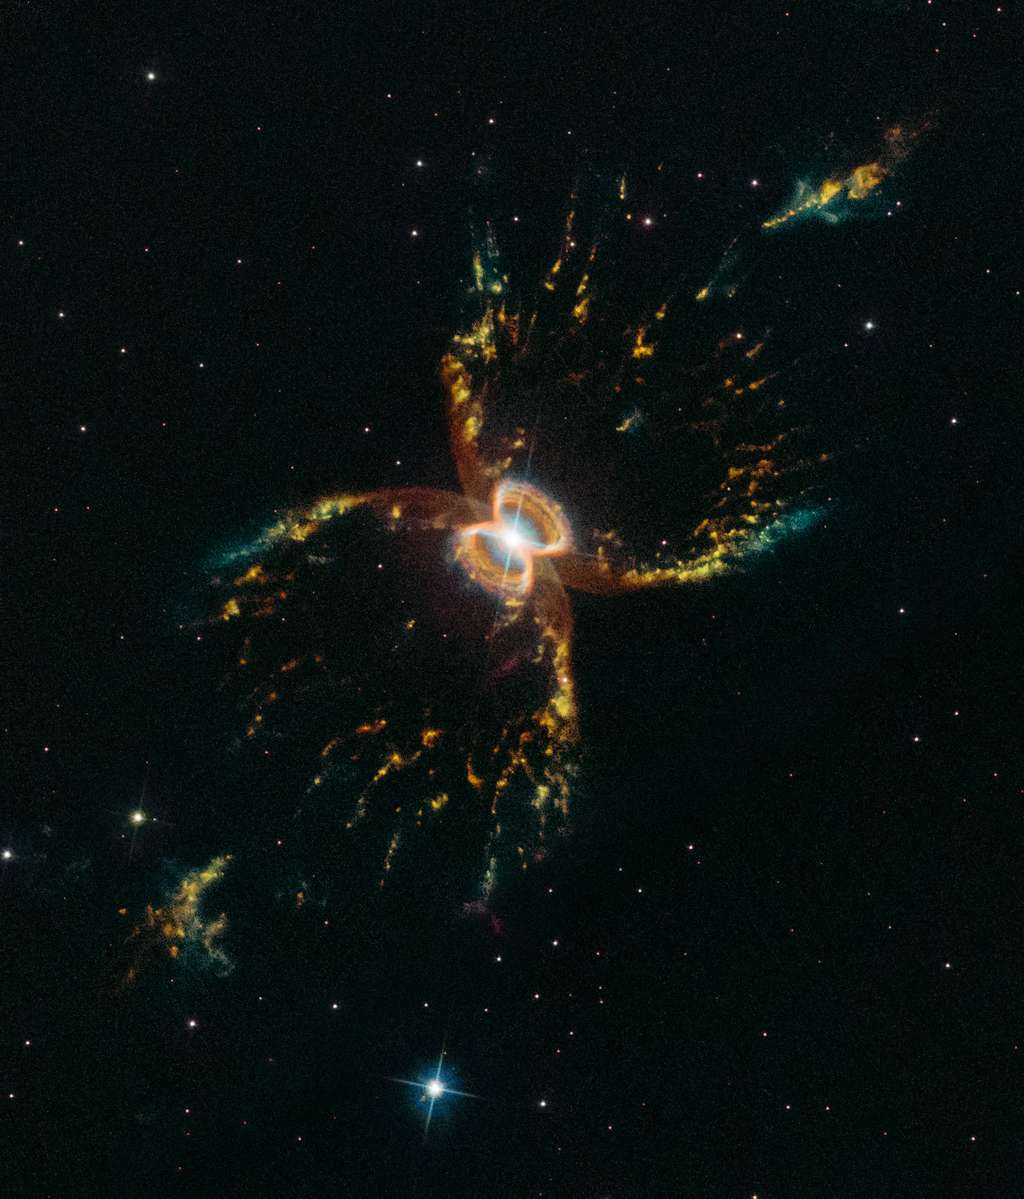 La nébuleuse du Crabe du Sud photographiée par Hubble en mars dernier. Le télescope spatial l’avait déjà dépeinte il y a 20 ans, en 1999. Ce nouveau portrait composite a été tiré par sa caméra WFC3 <em>(Wide Field Camera 3)</em>. Les gaz en rouge correspondent au souffre, en vert à l’hydrogène et en bleu à l’oxygène. © Nasa, ESA, STScI